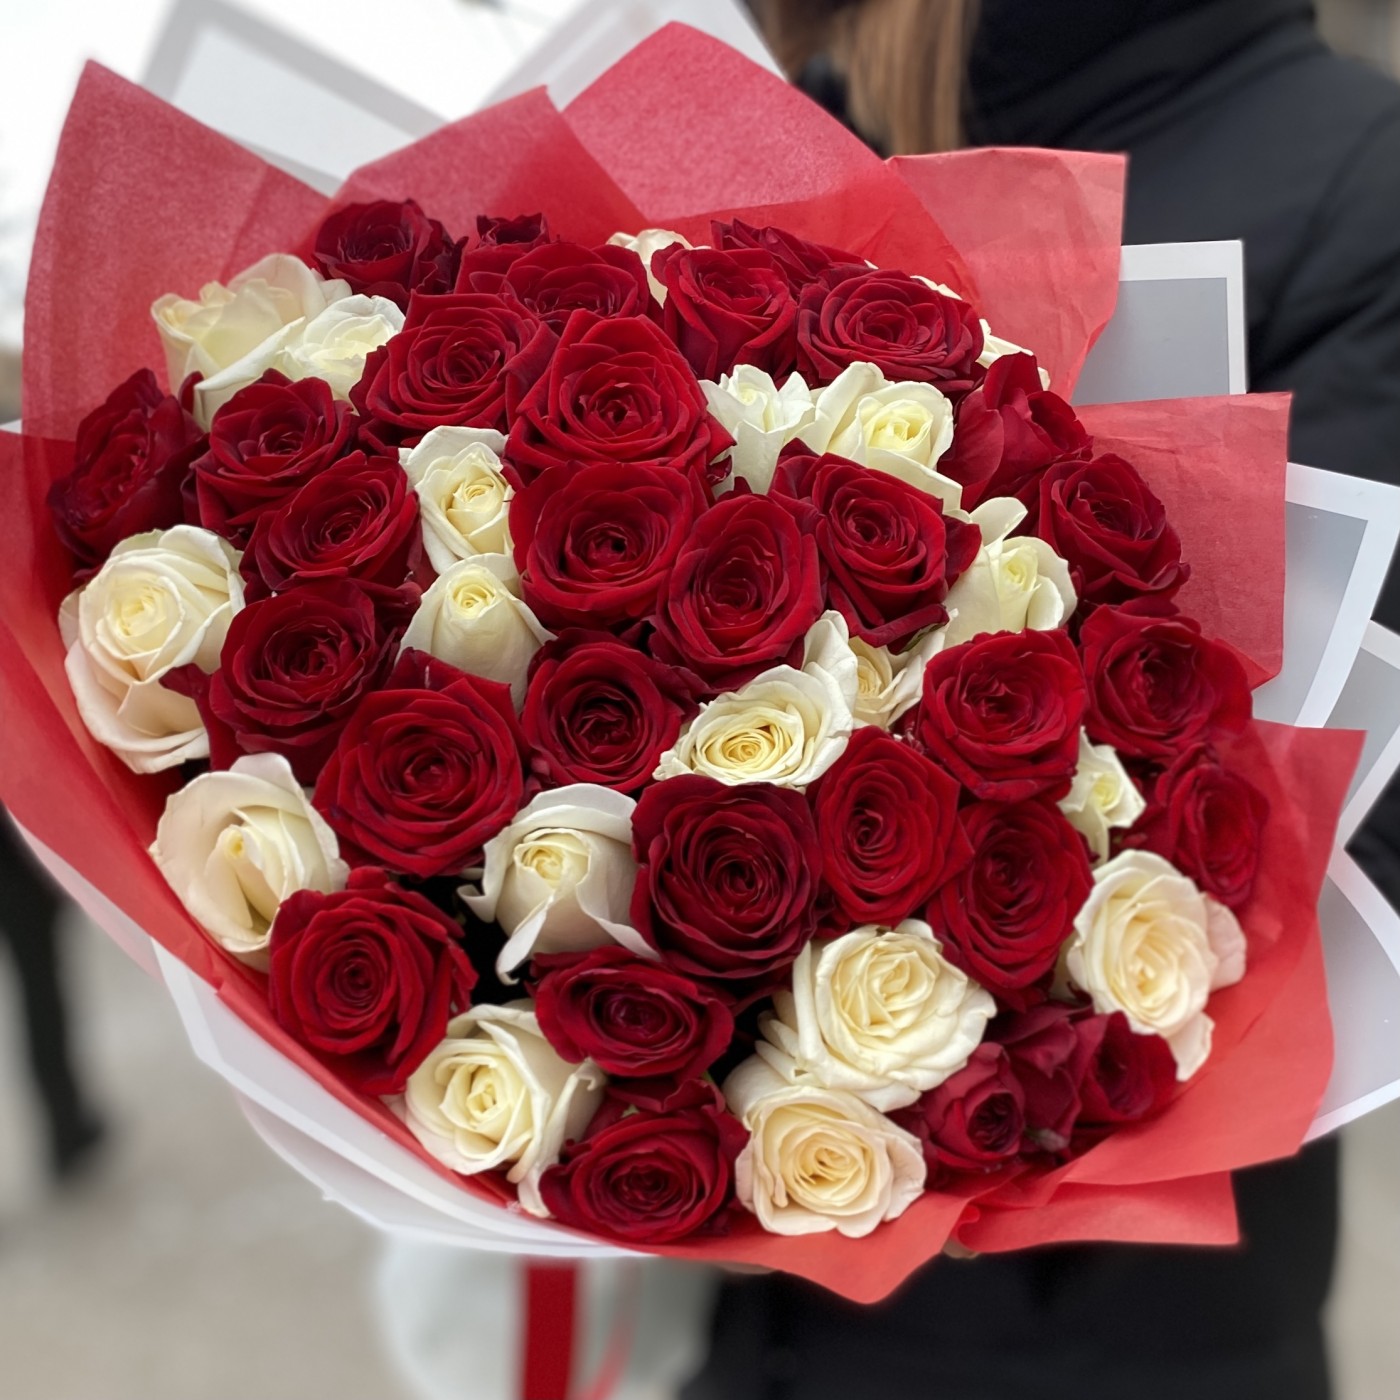 потрясающий букет из красных и белых роз ценой до 8000 рублей